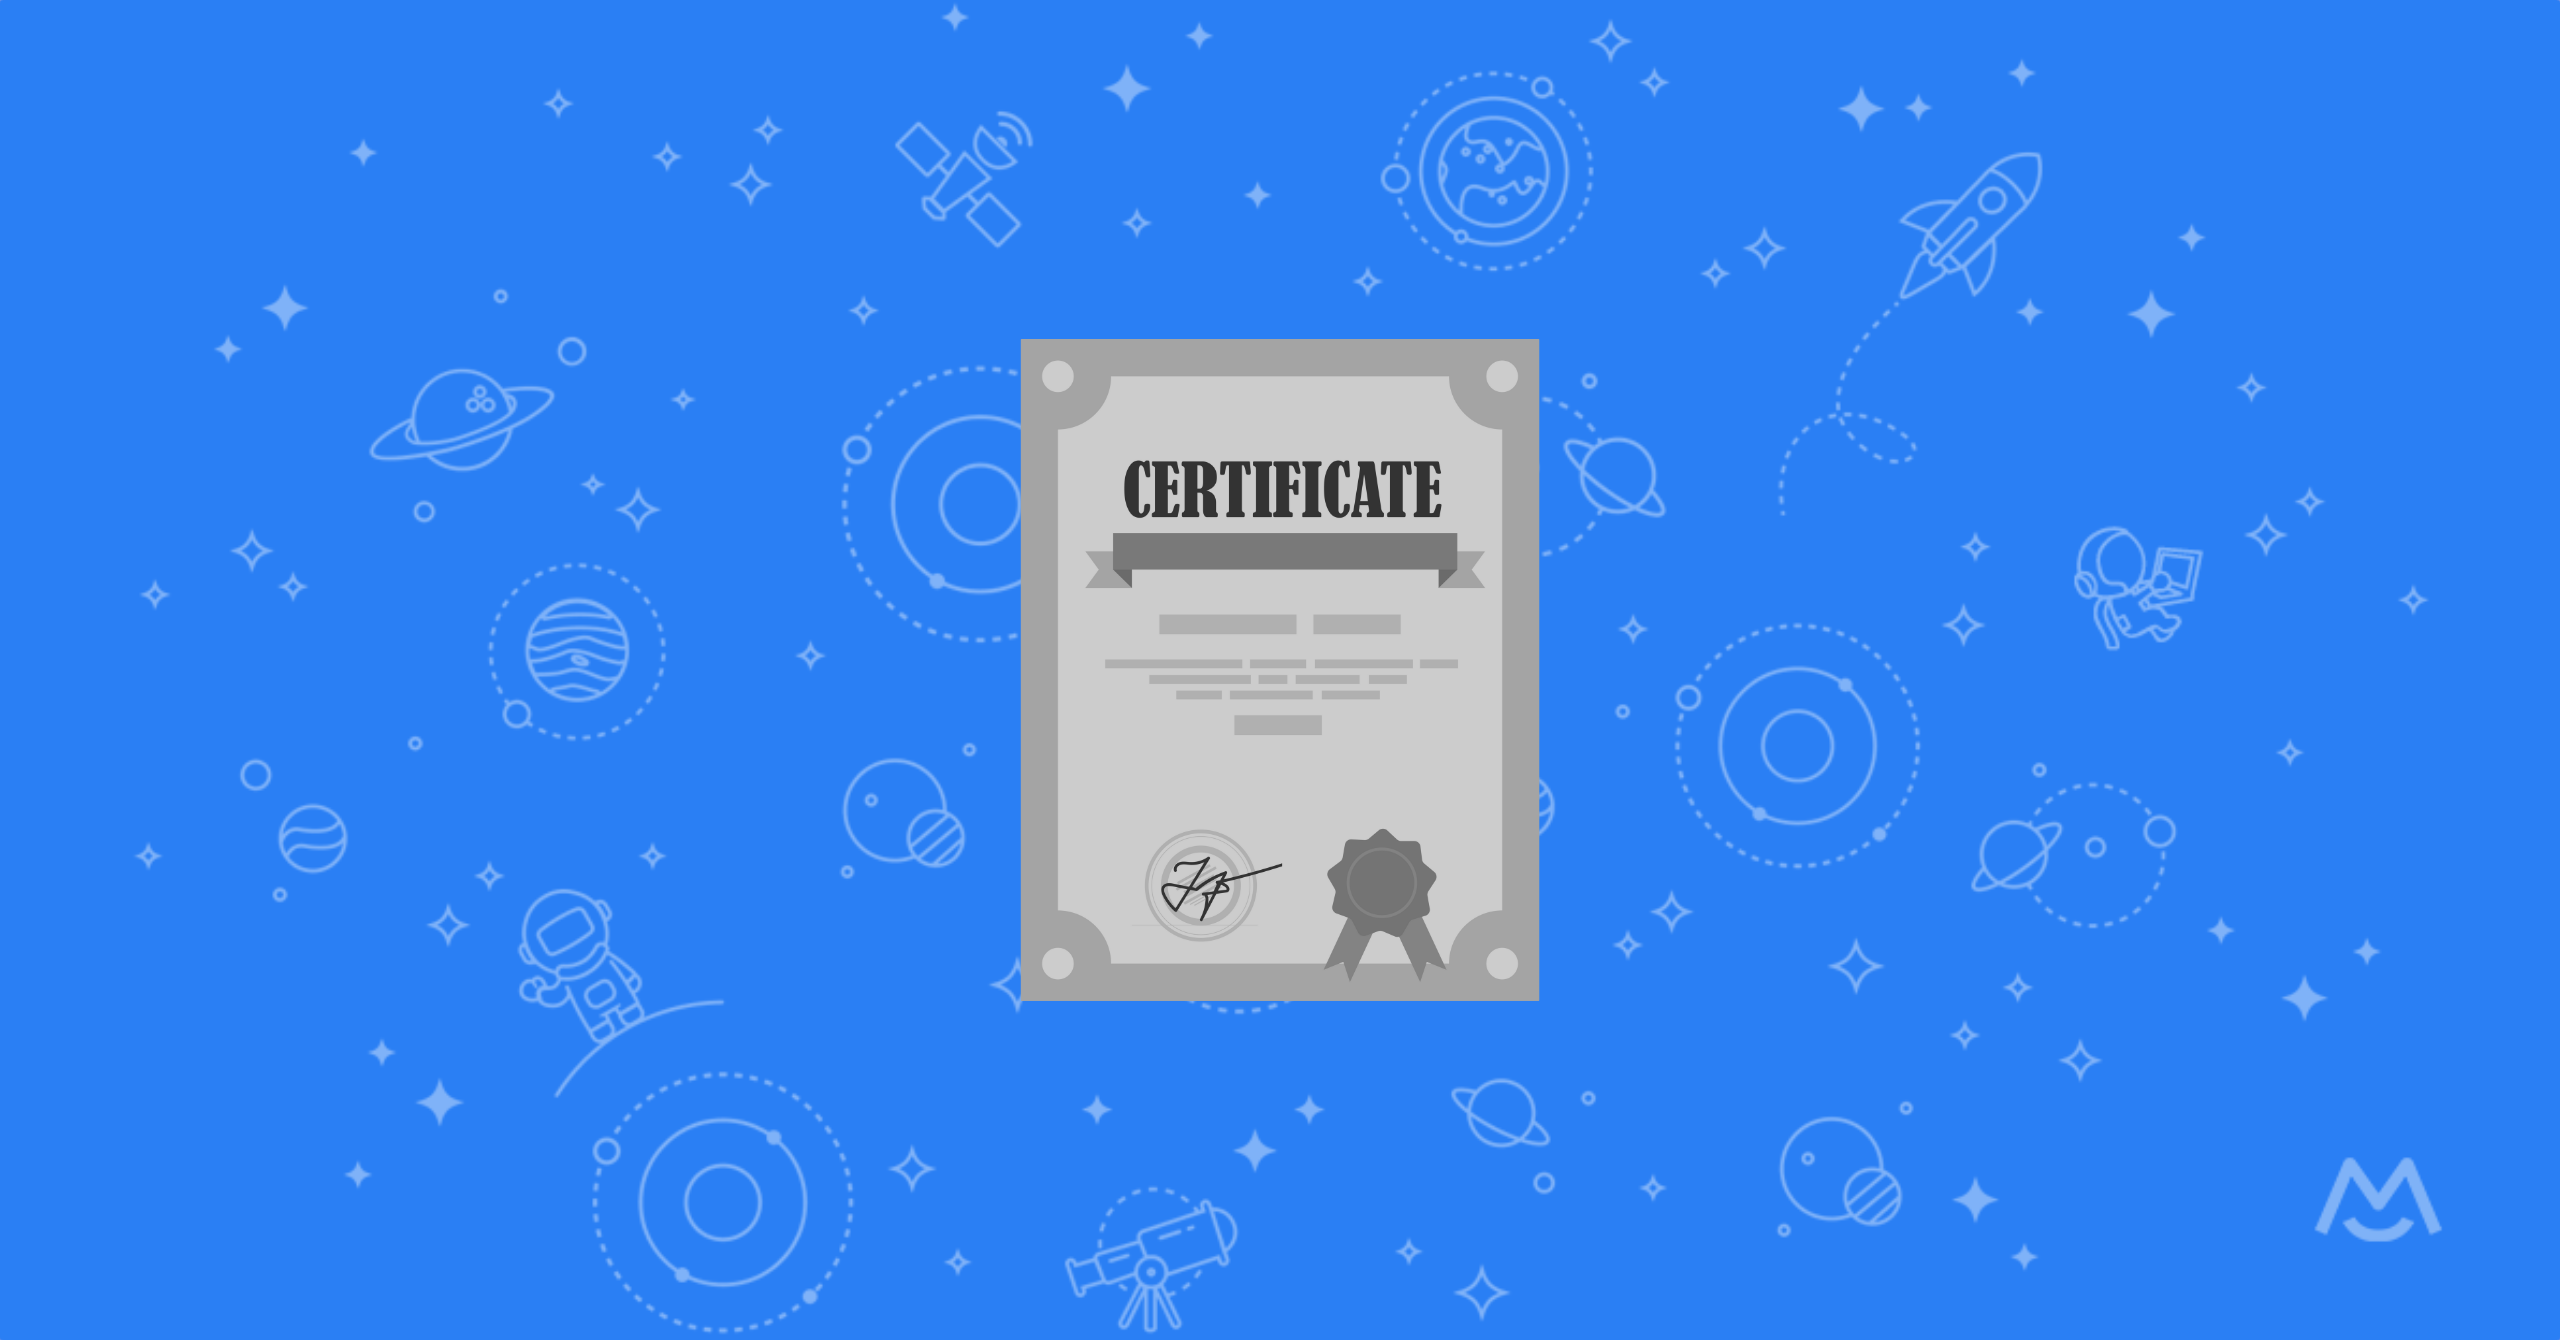 Certificate Generators